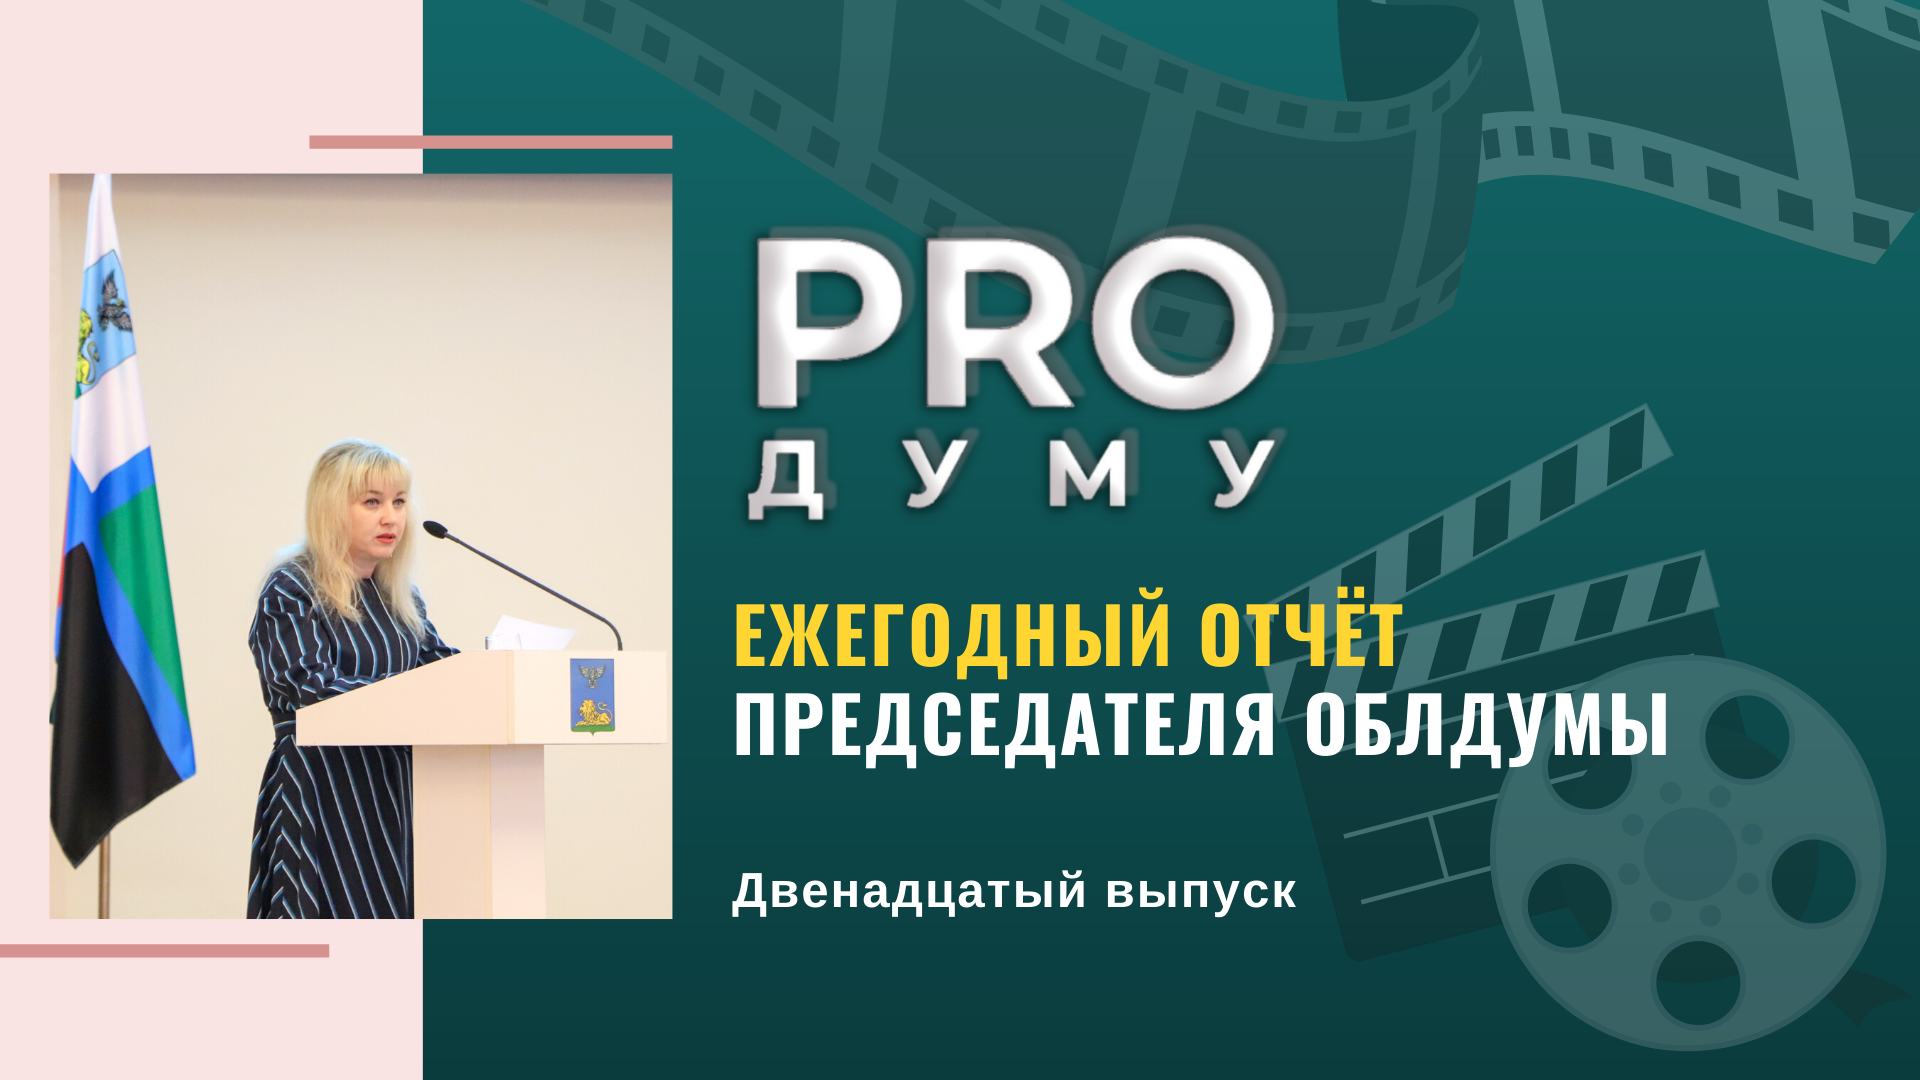 PRO Думу: Ежегодный Отчёт председателя областной Думы